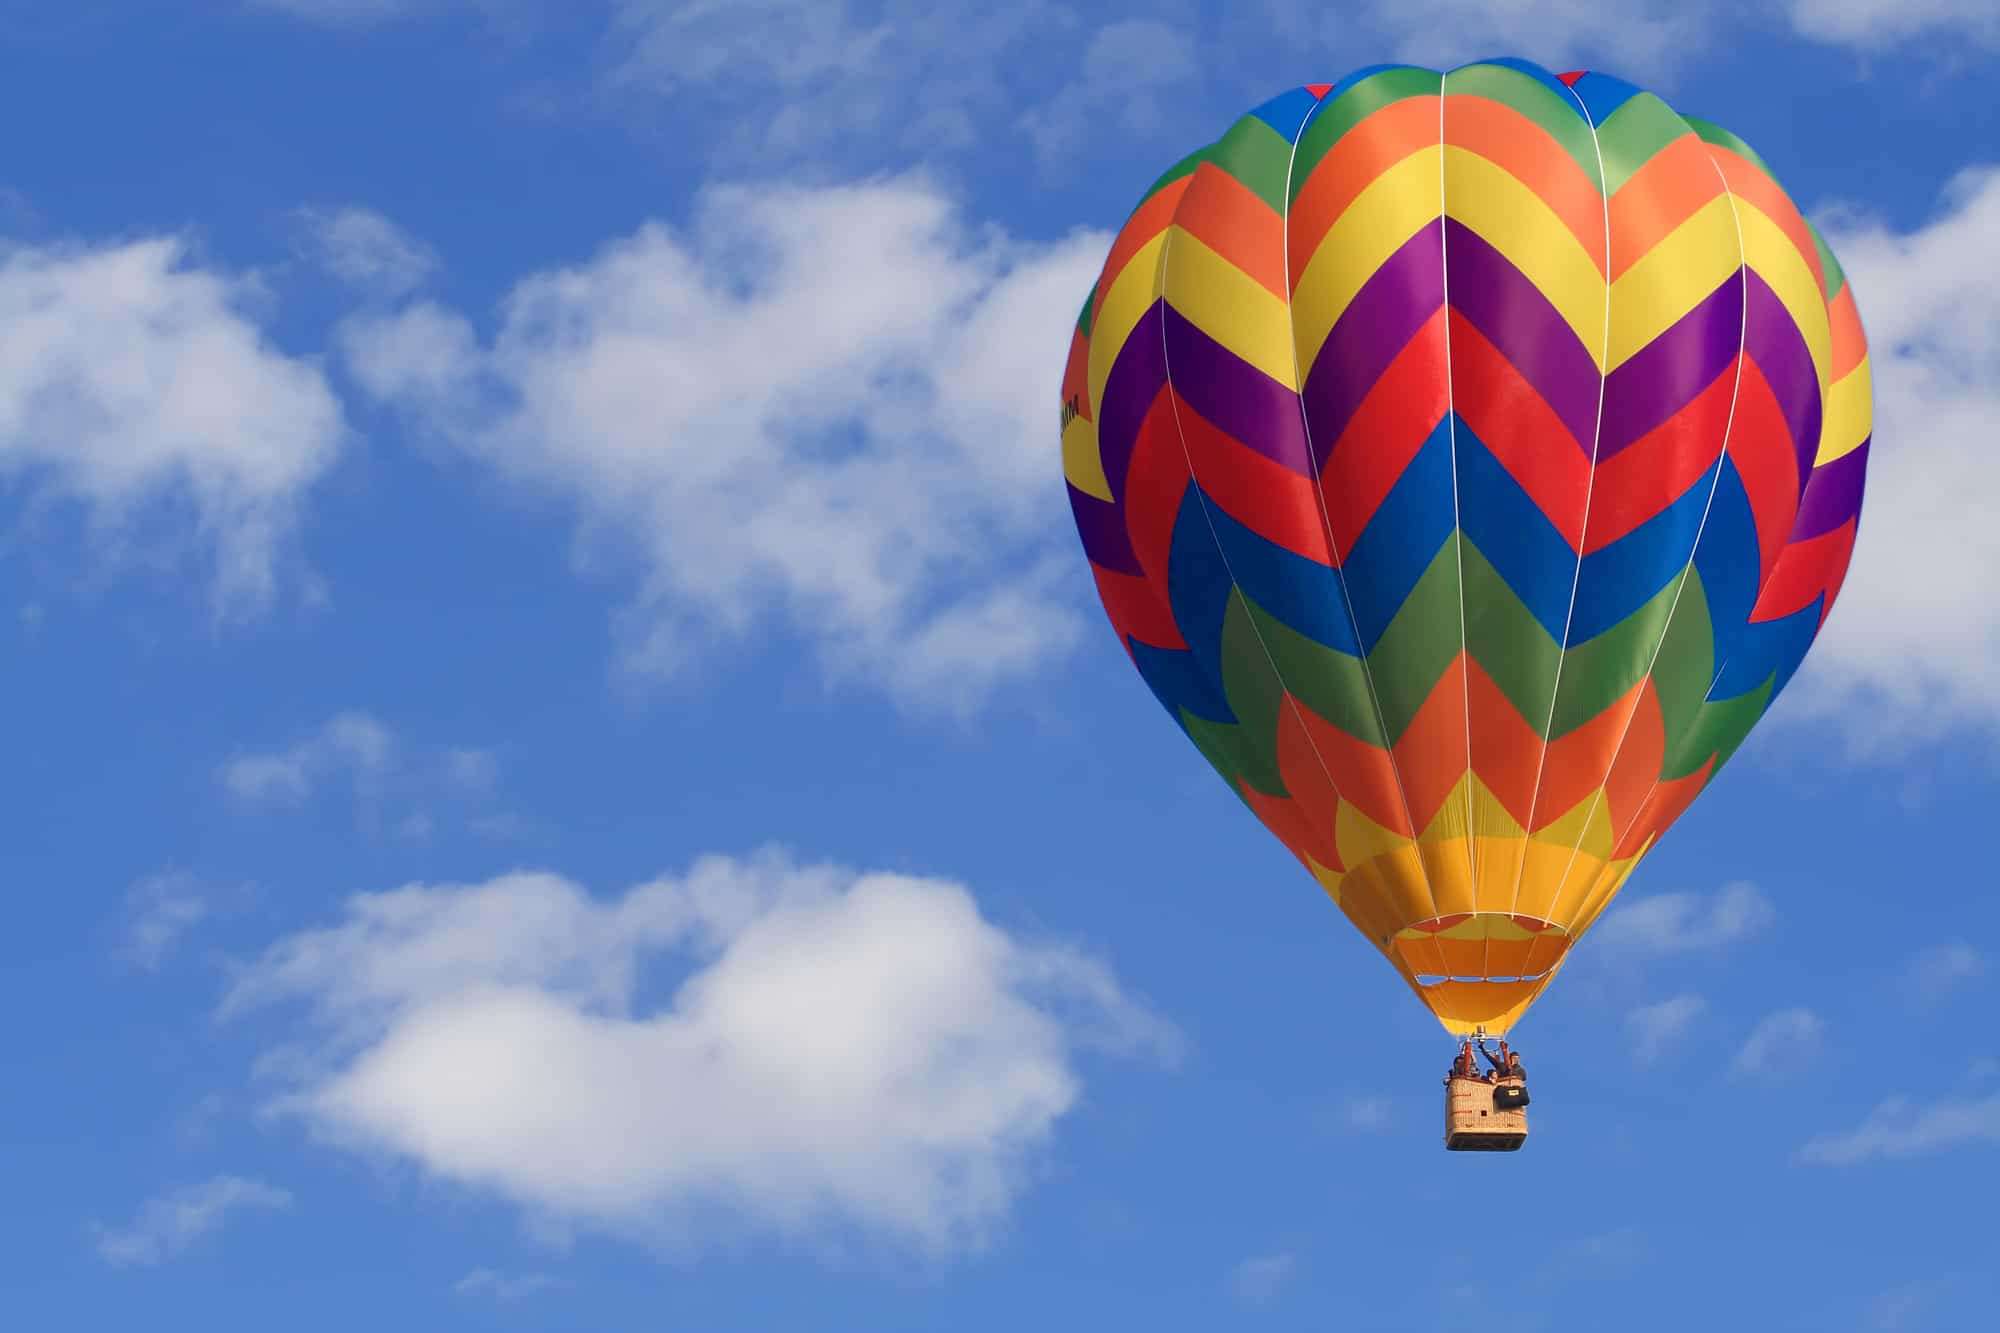 Maryland Hot Air Balloon Rides